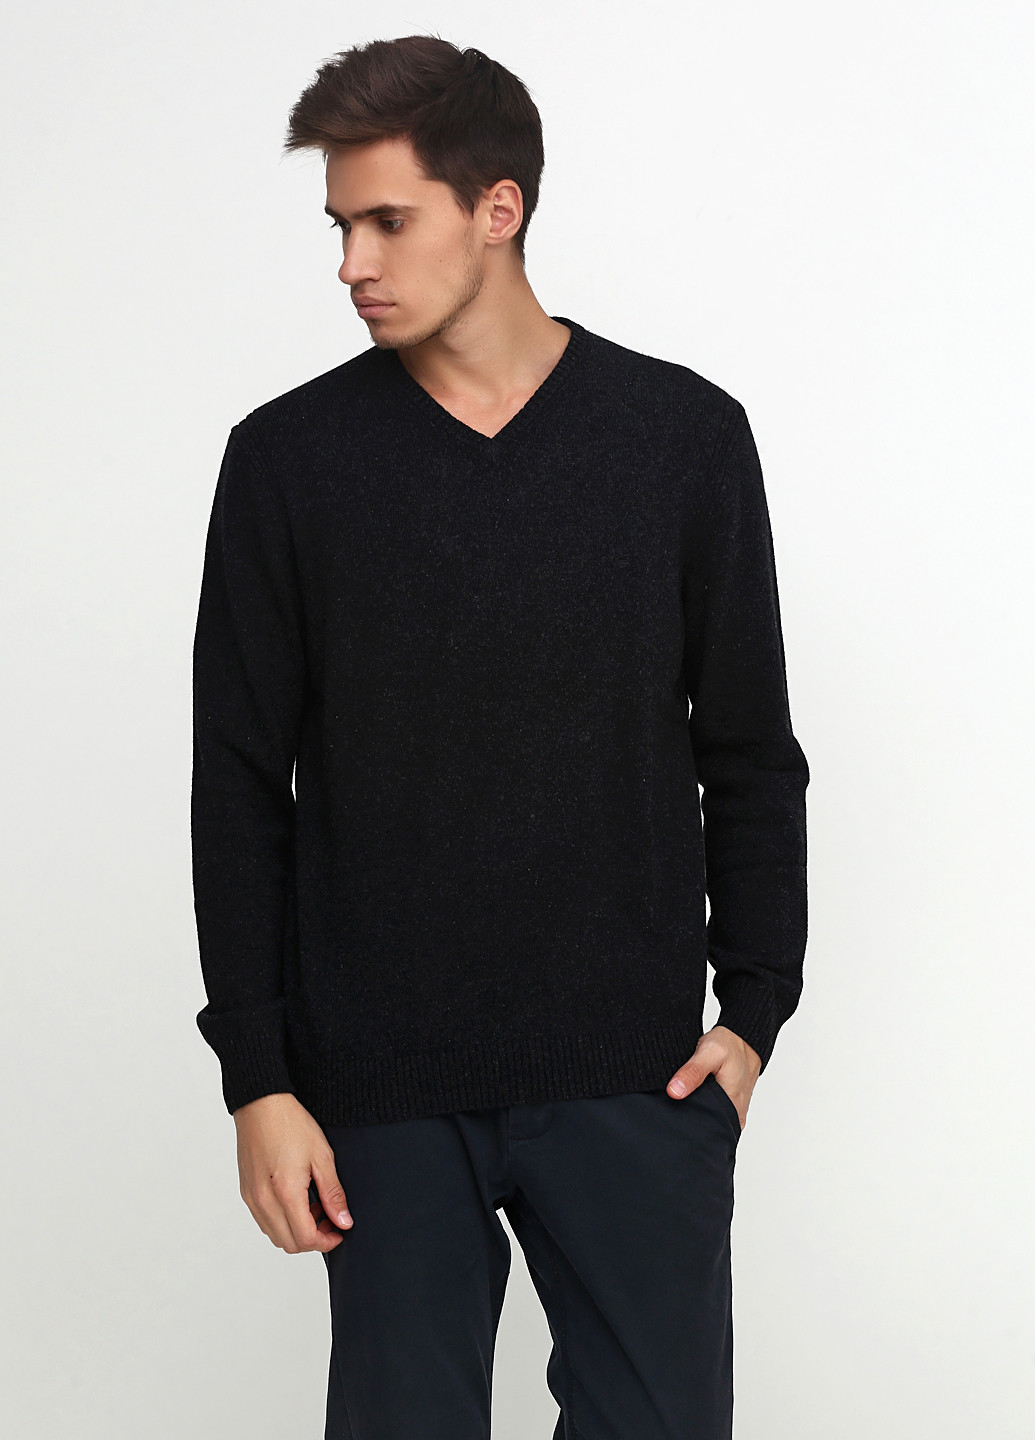 Грифельно-серый демисезонный пуловер пуловер Camel Active